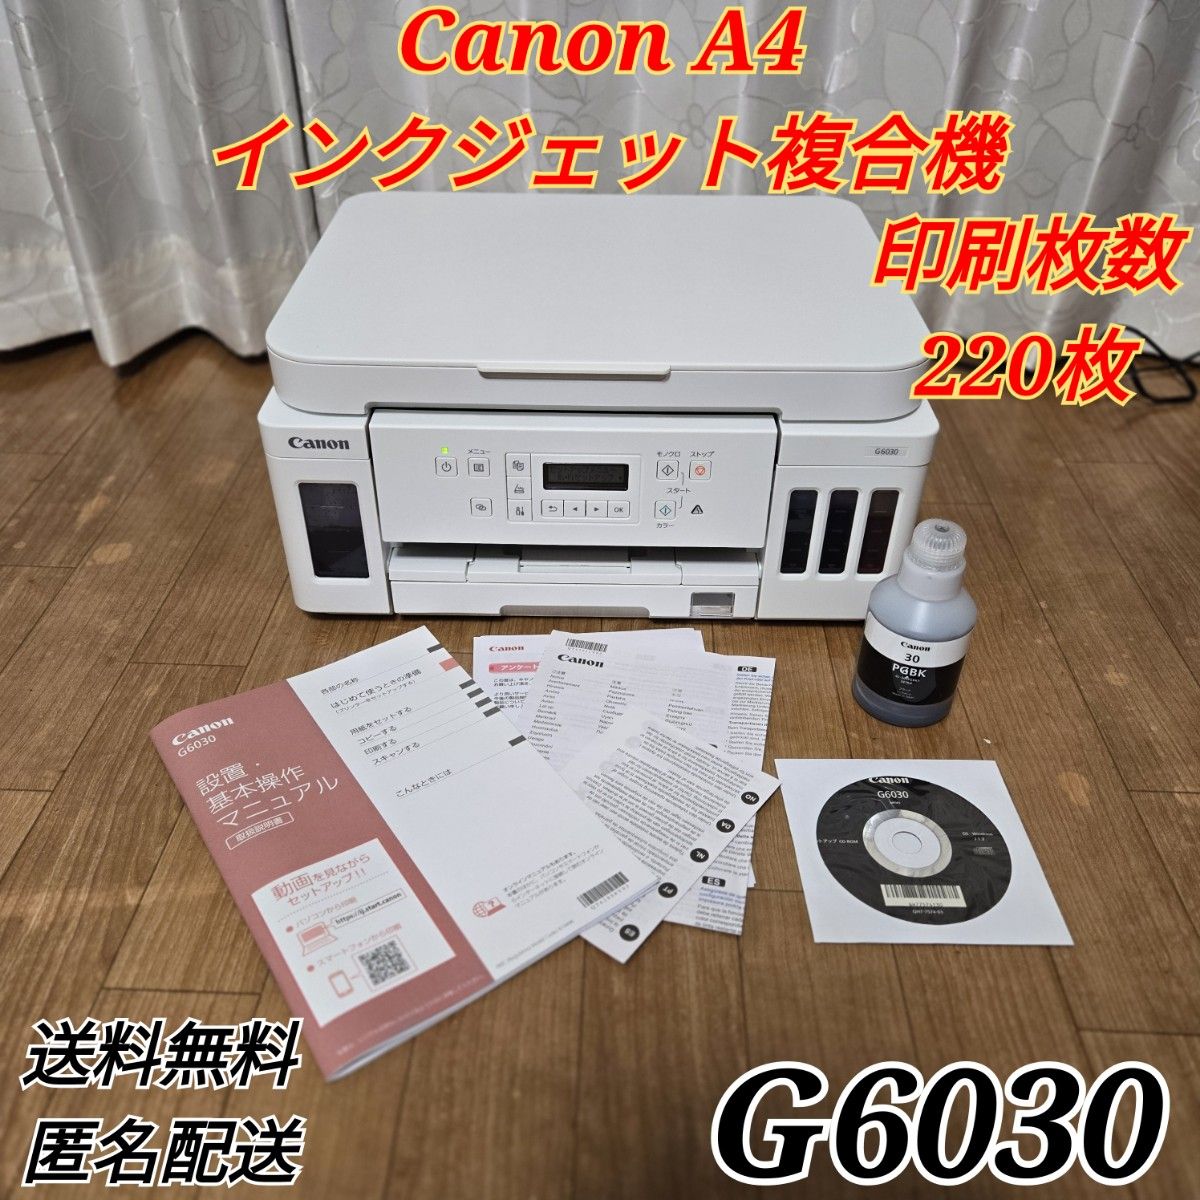 Canon プリンター A4インクジェット複合機 ギガタンク搭載 G6030